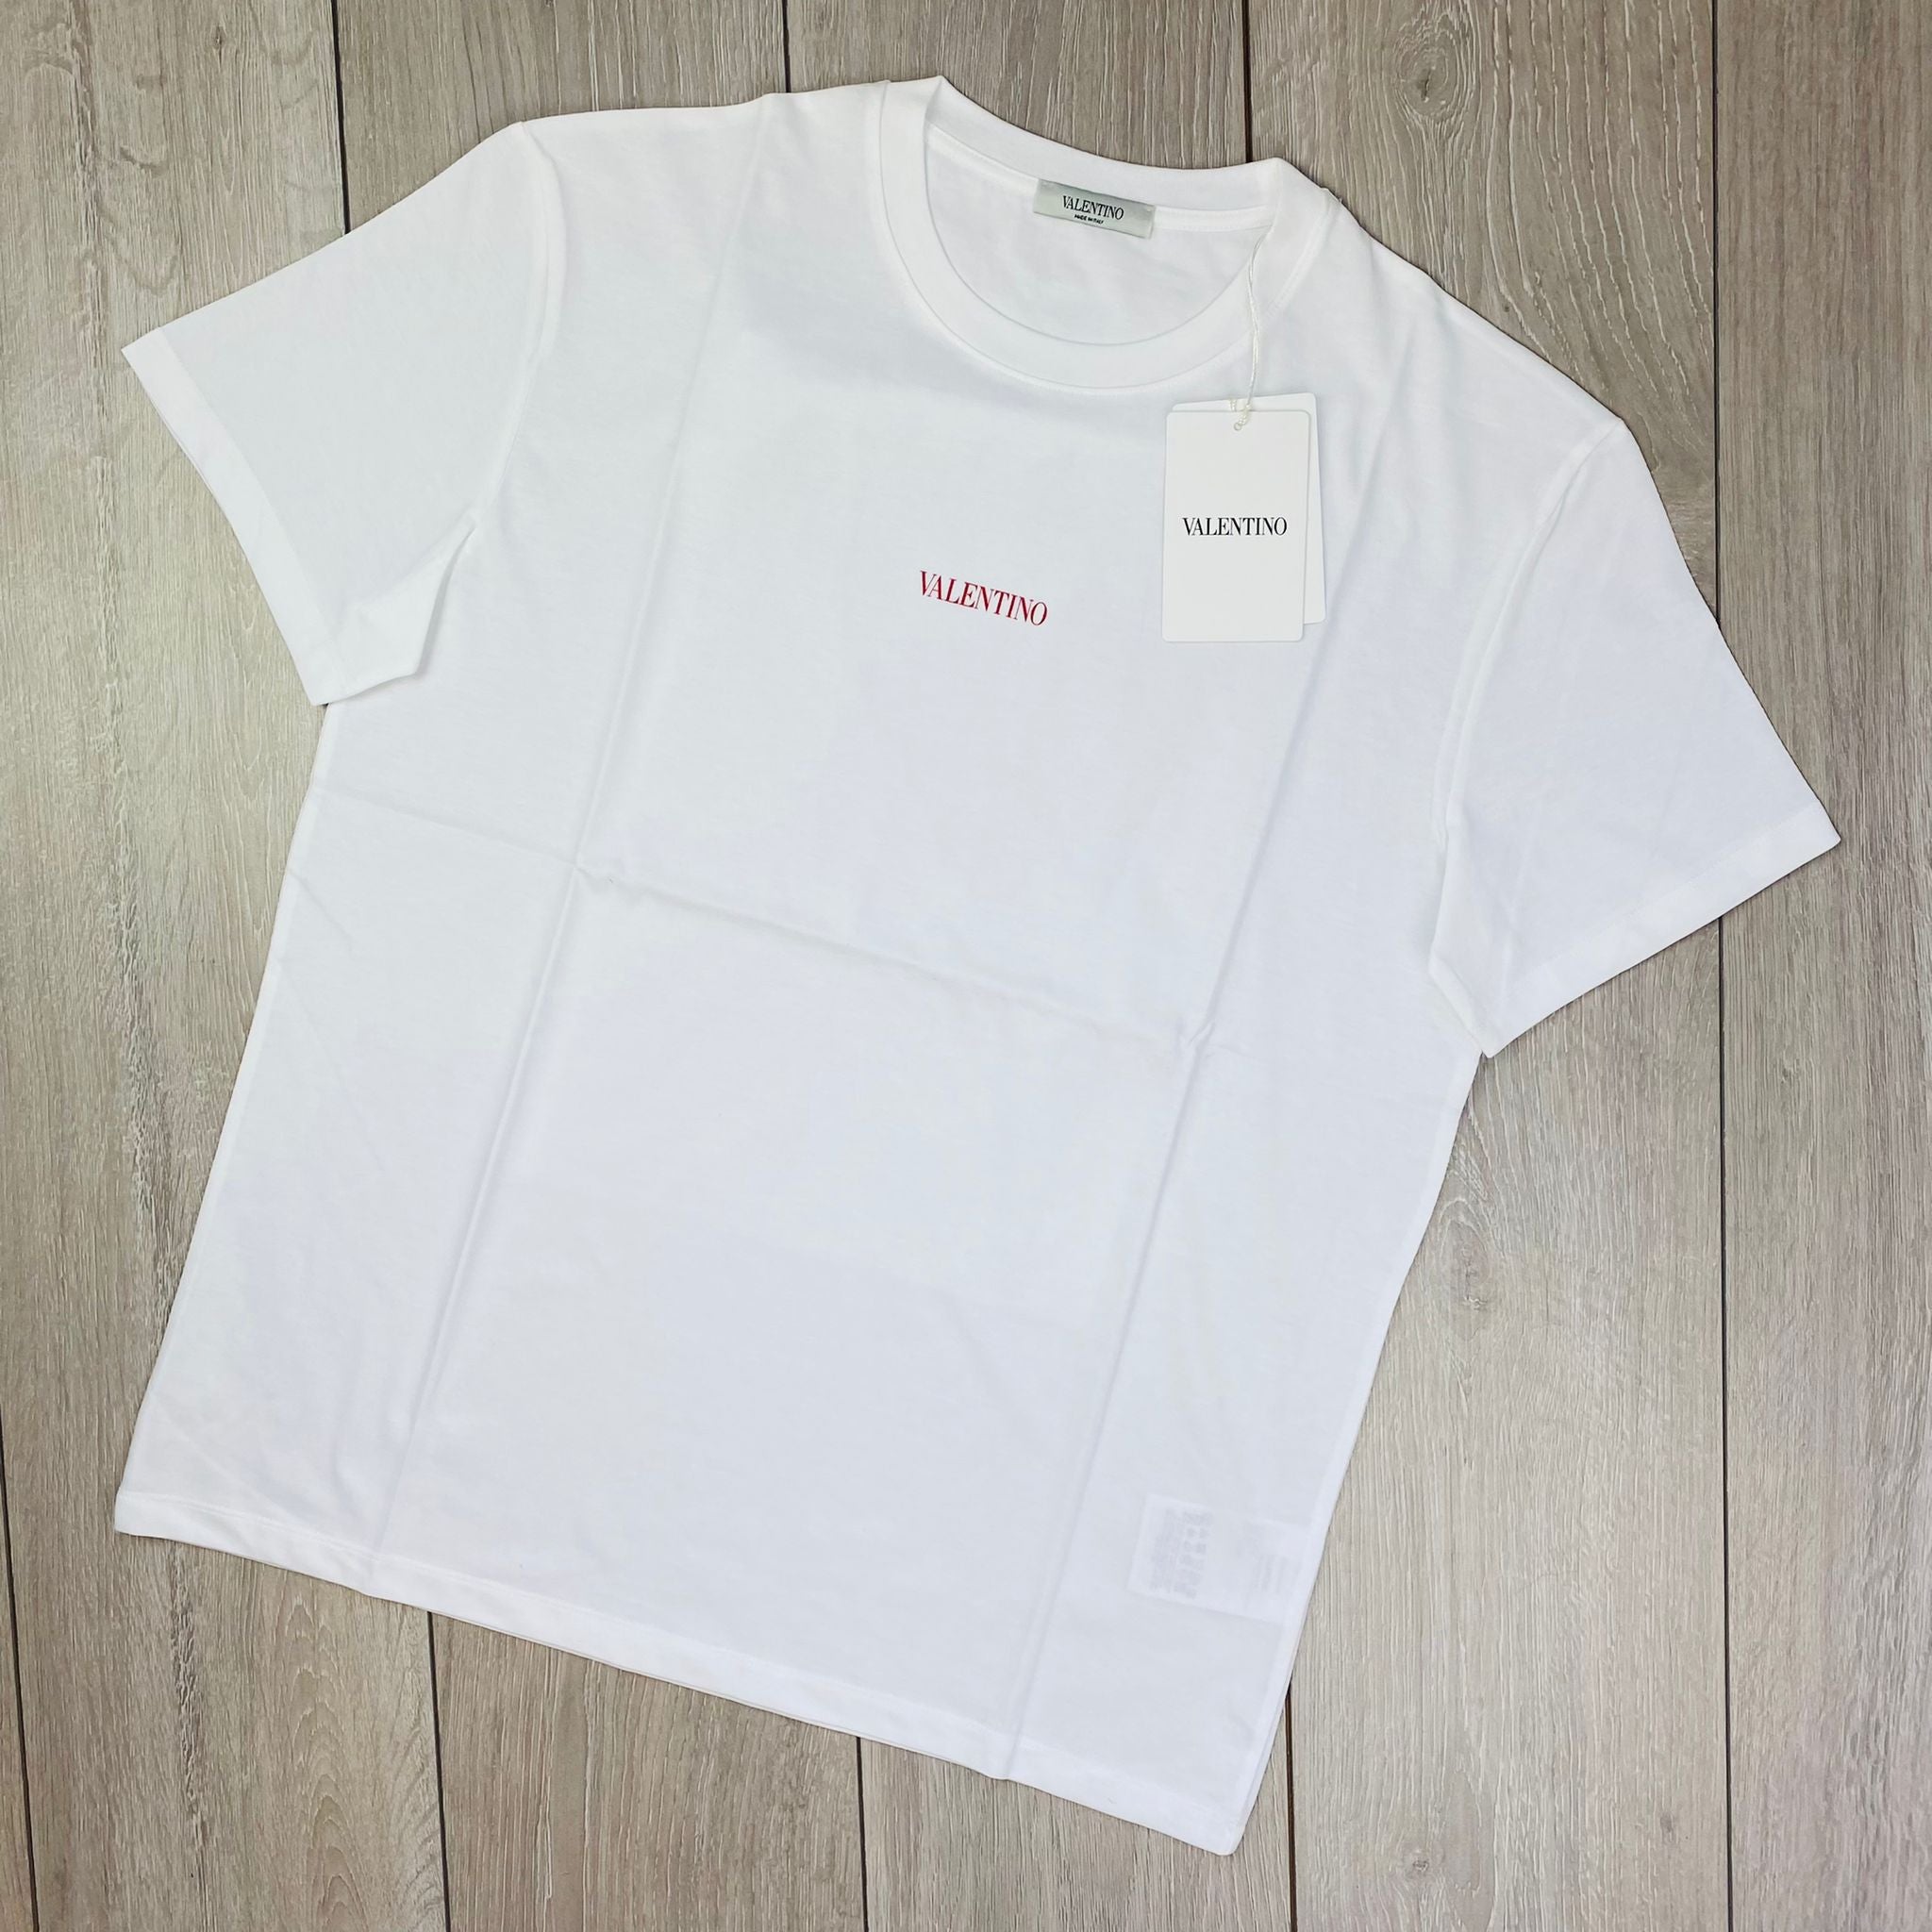 Valentino Printed T-Shirt